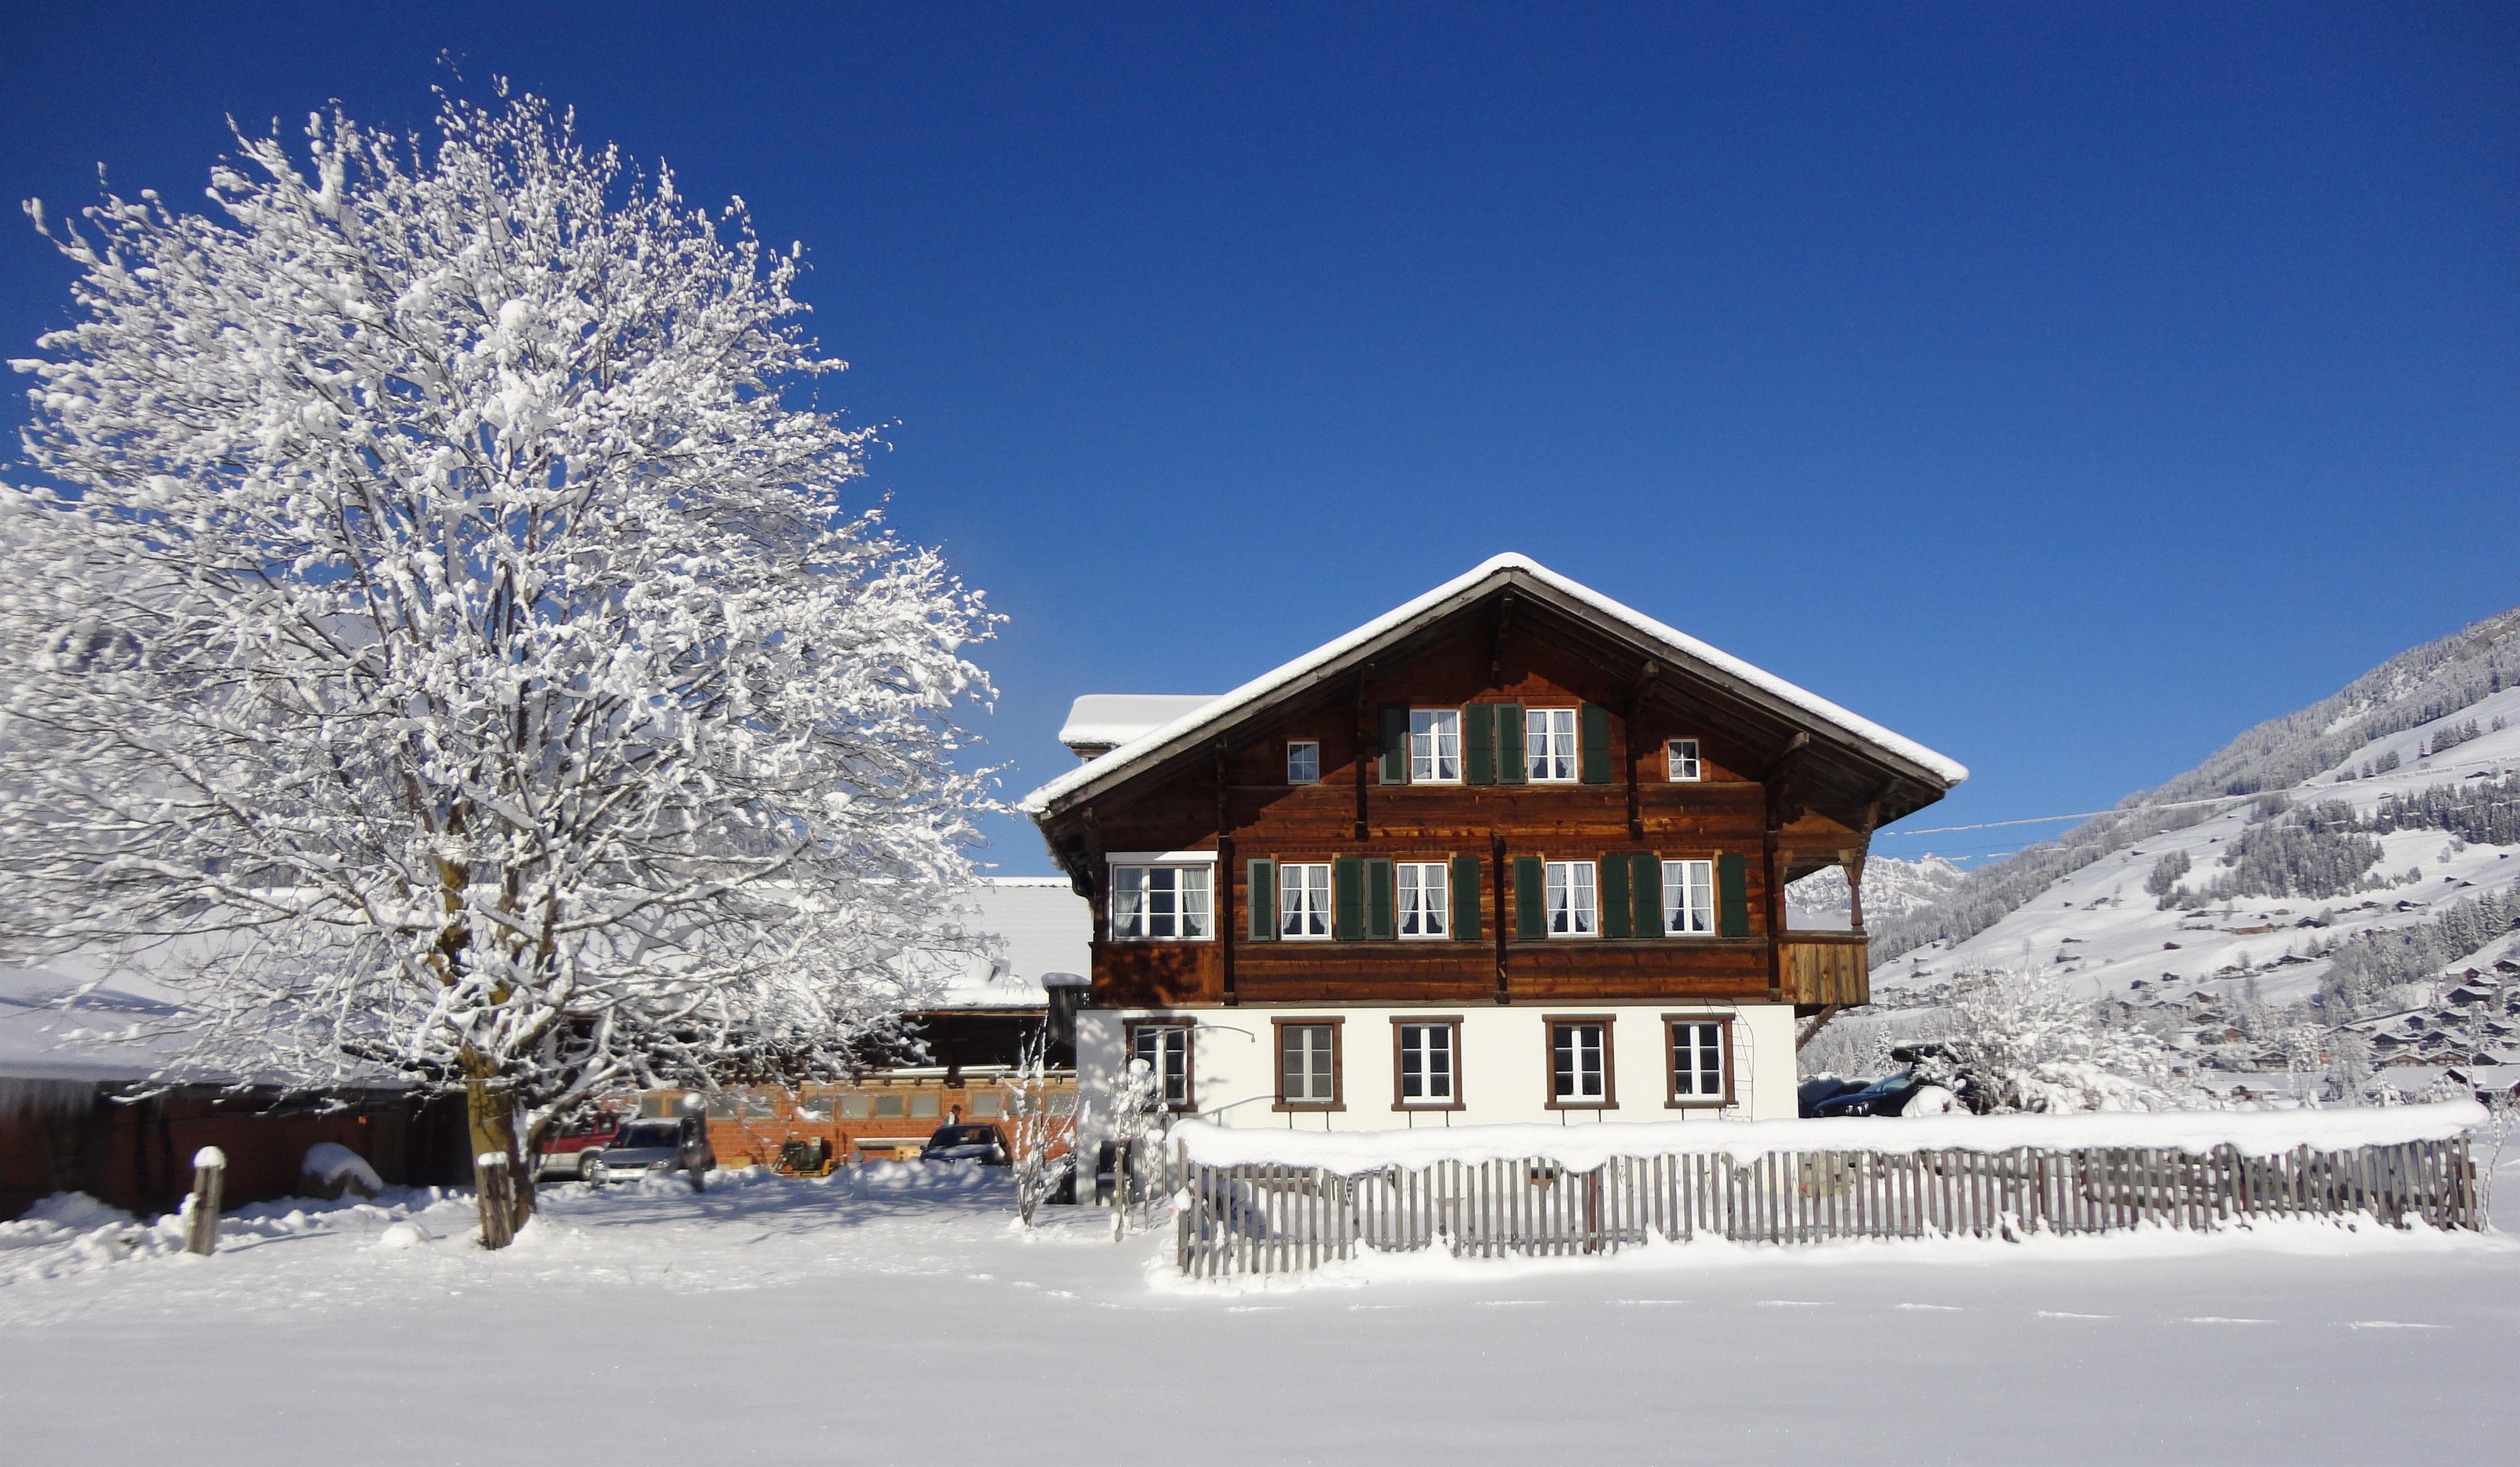 Bühlerhof 6-Bett-Wohnung Ferienwohnung in der Schweiz